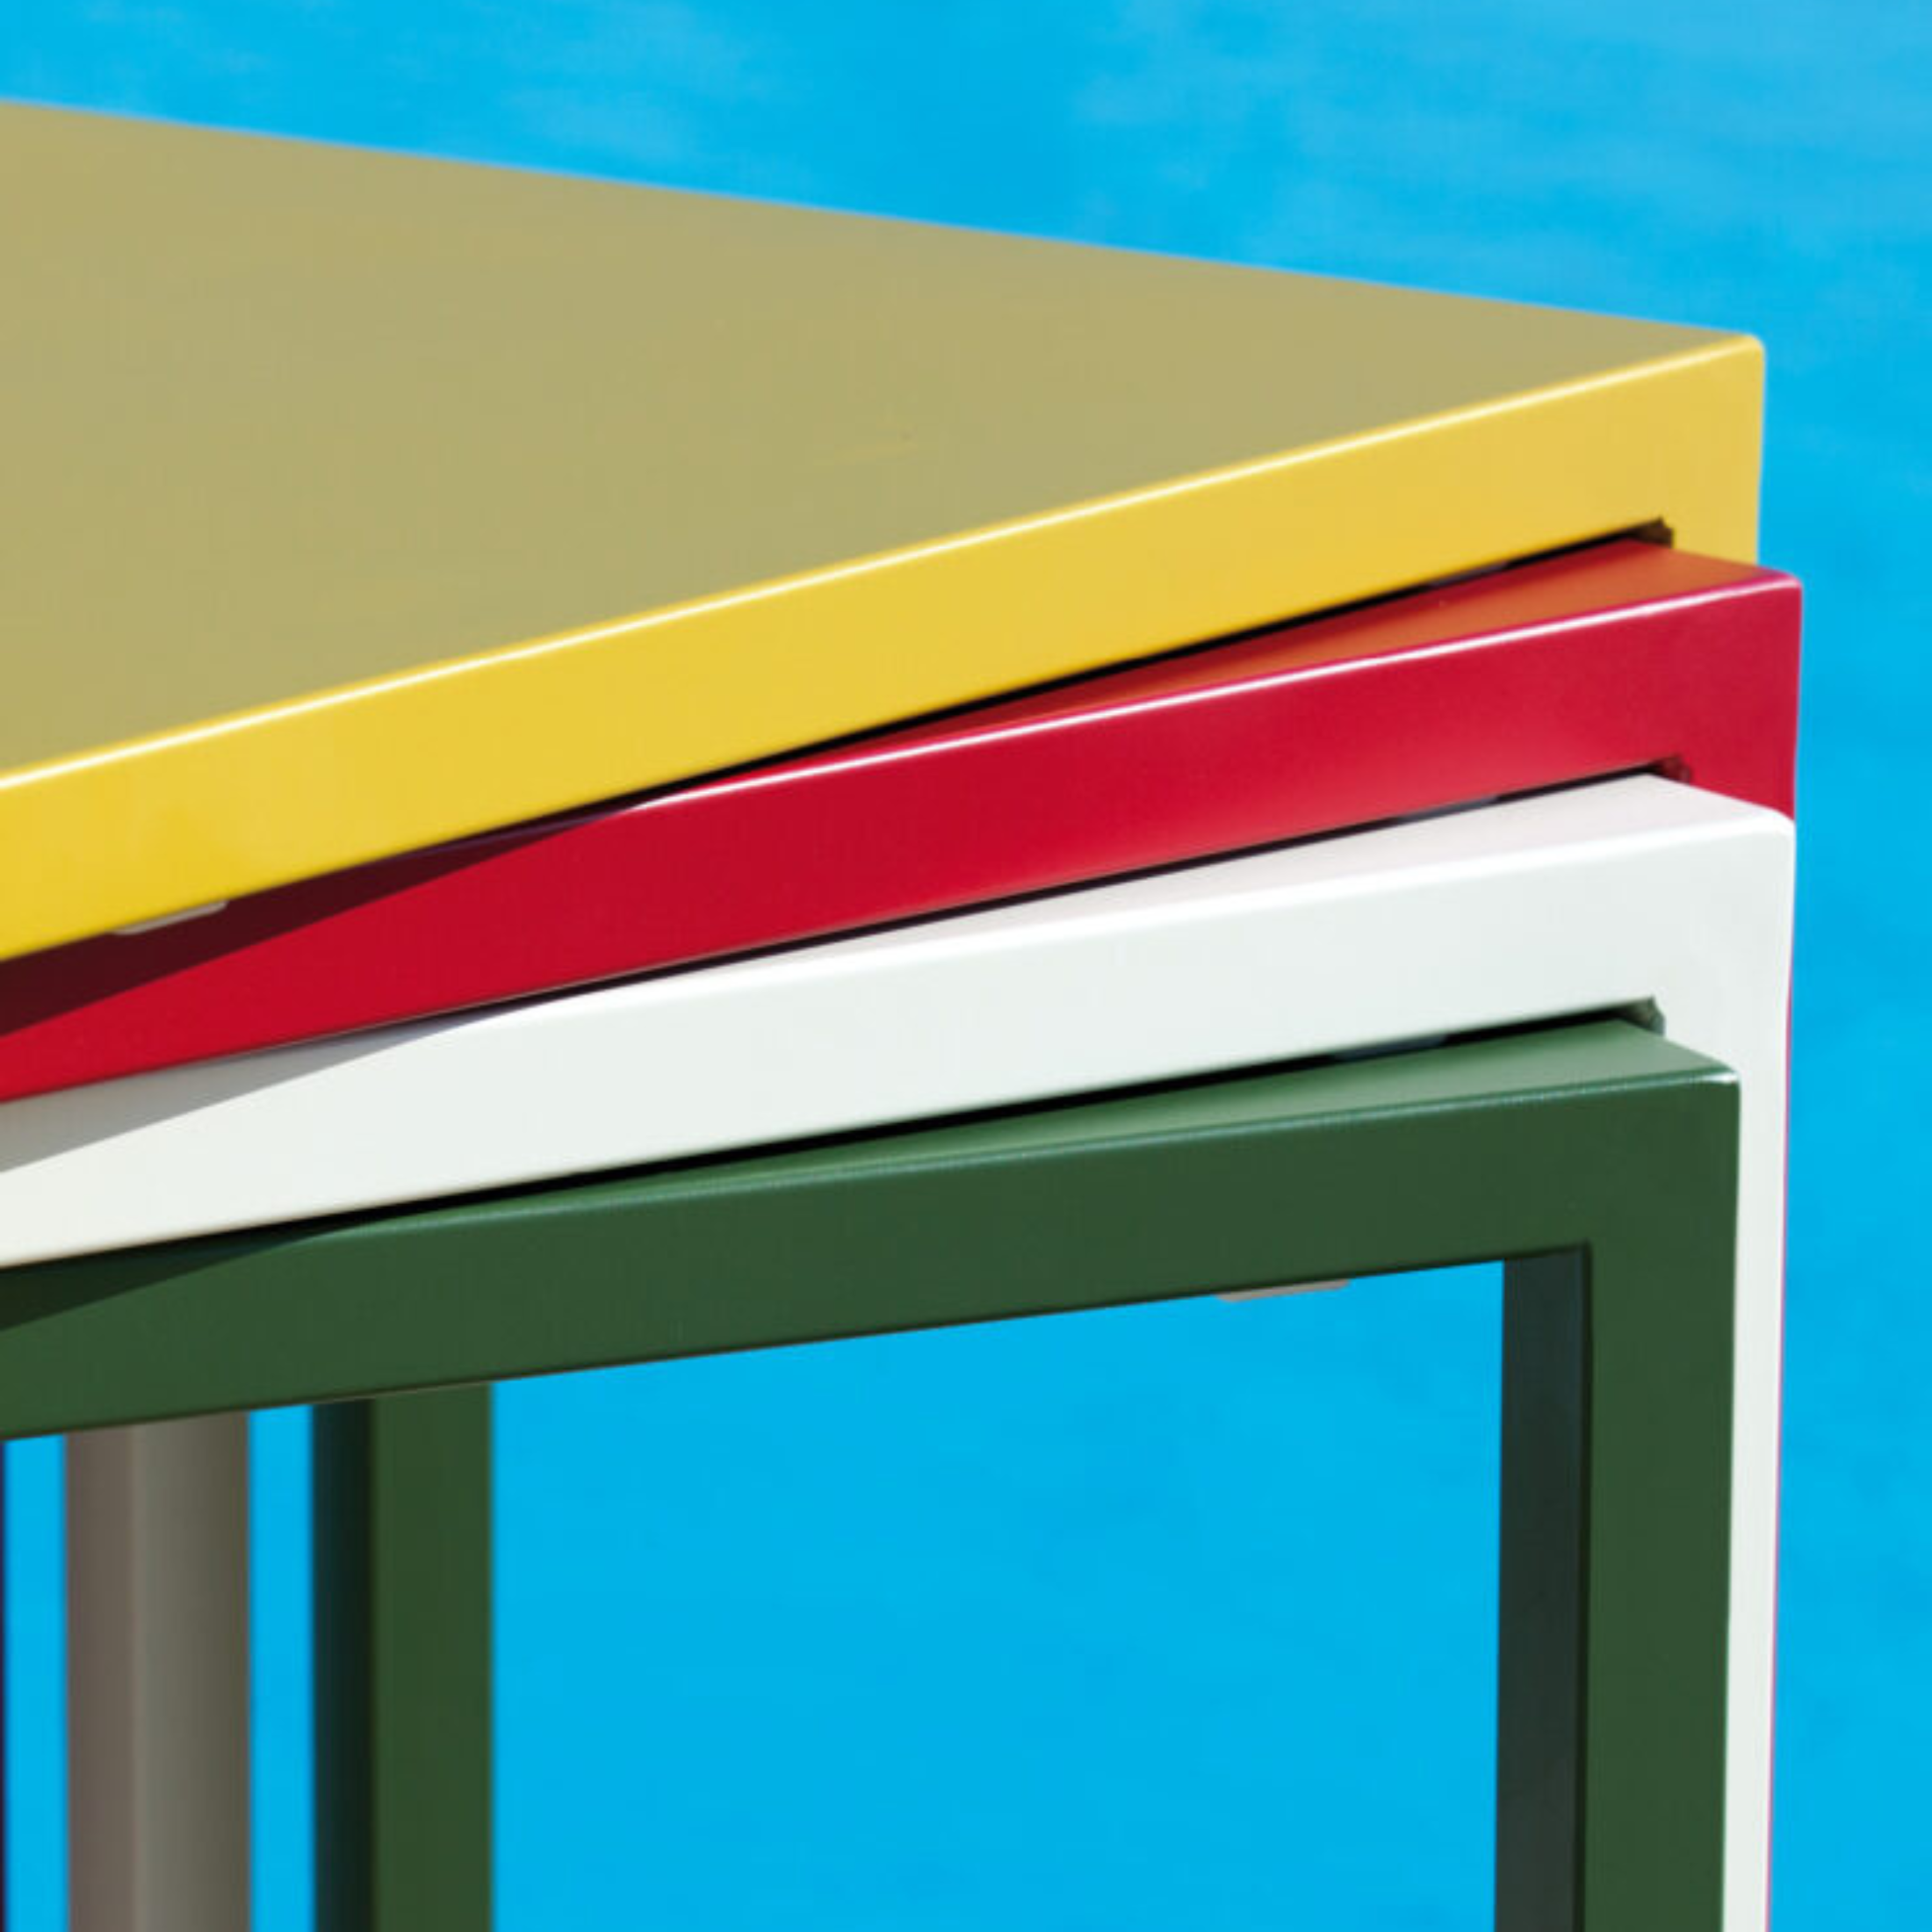 Tavolo alto in metallo verniciato "Seaside" da bar e giardino moderno h 110 cm